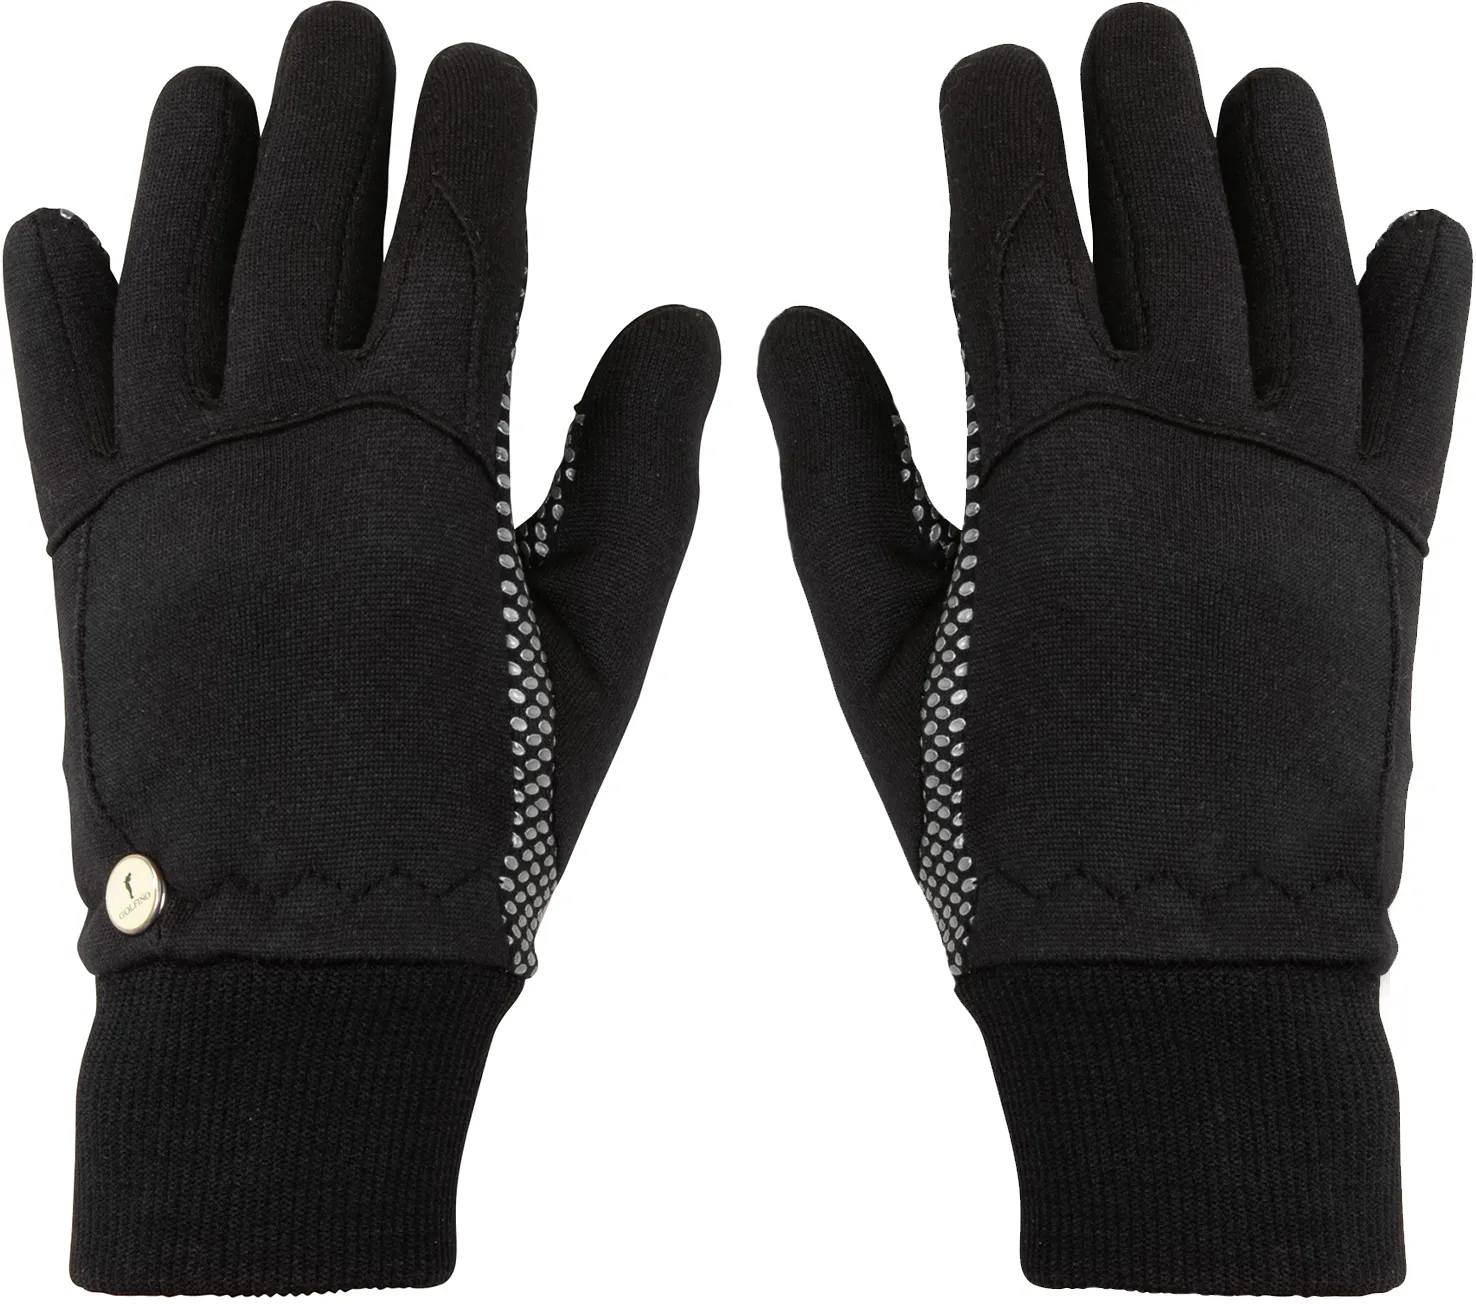 Golfino Functional Winter Handschuhe, schwarz